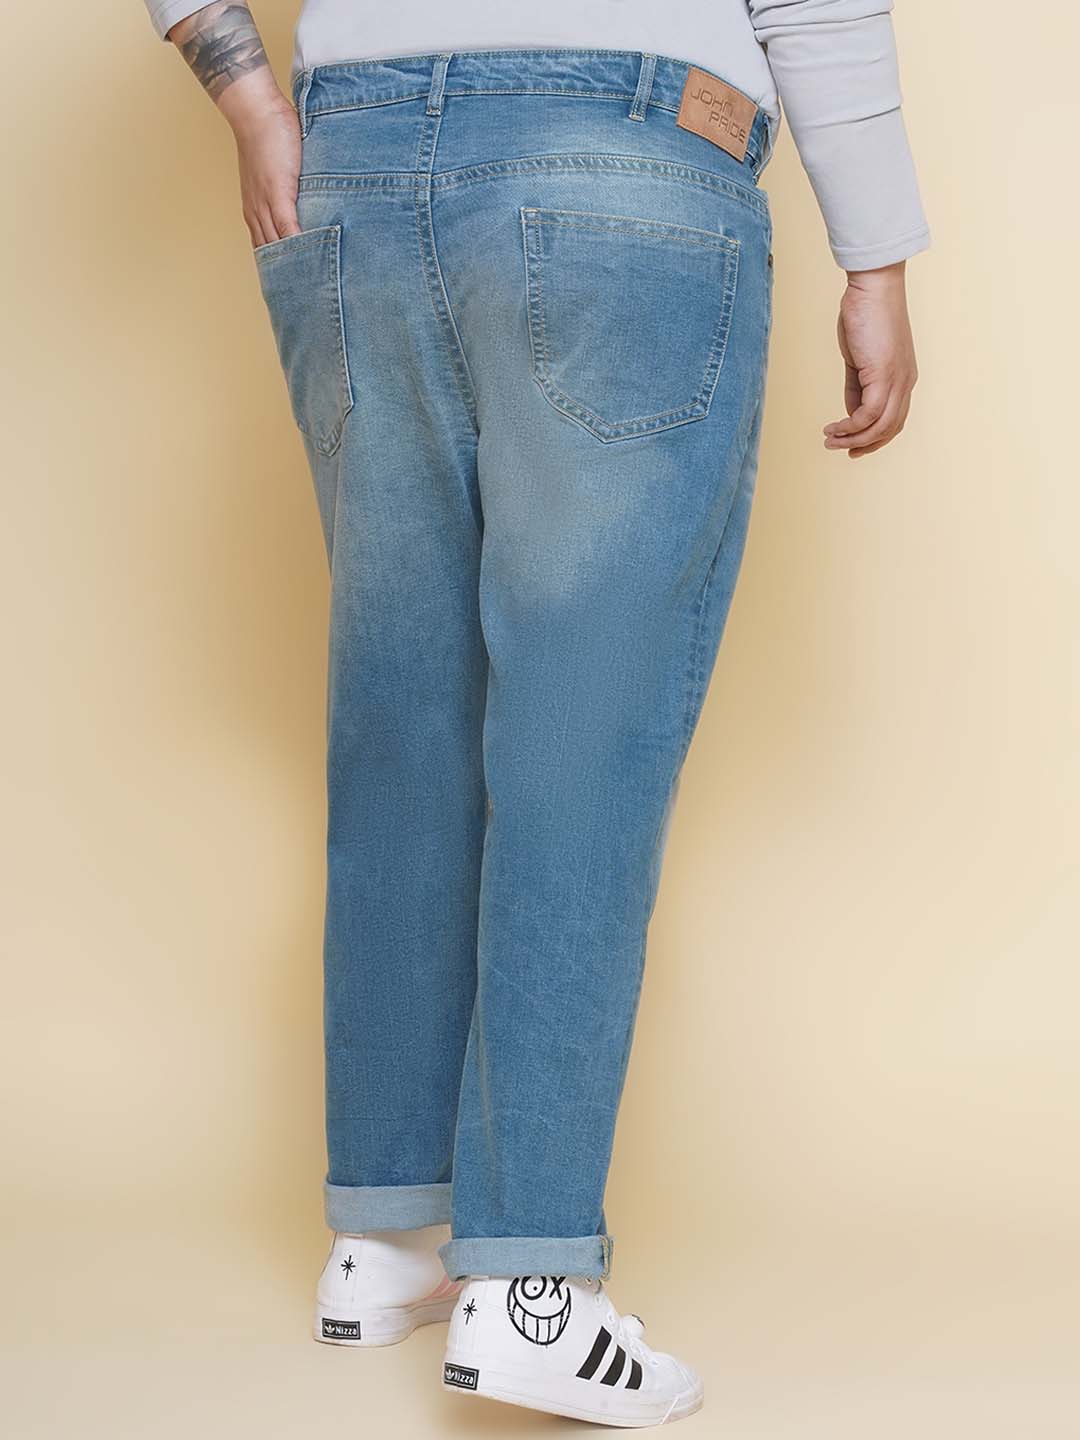 bottomwear/jeans/JPJ12392/jpj12392-5.jpg